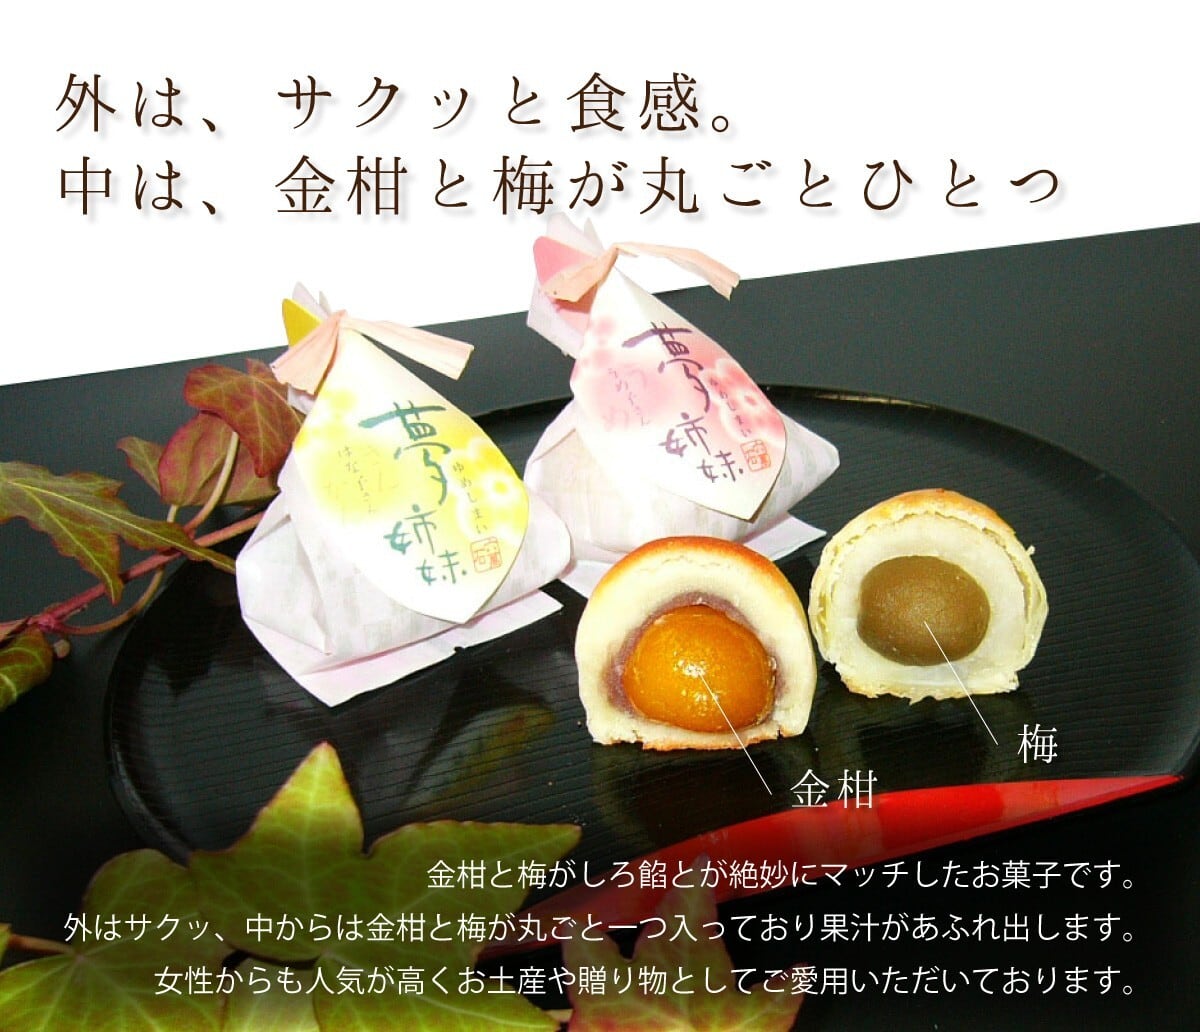 夢姉妹 -金柑,梅入りまんじゅう 6個入 #和菓子#饅頭 播磨奉菓匠 六萬石